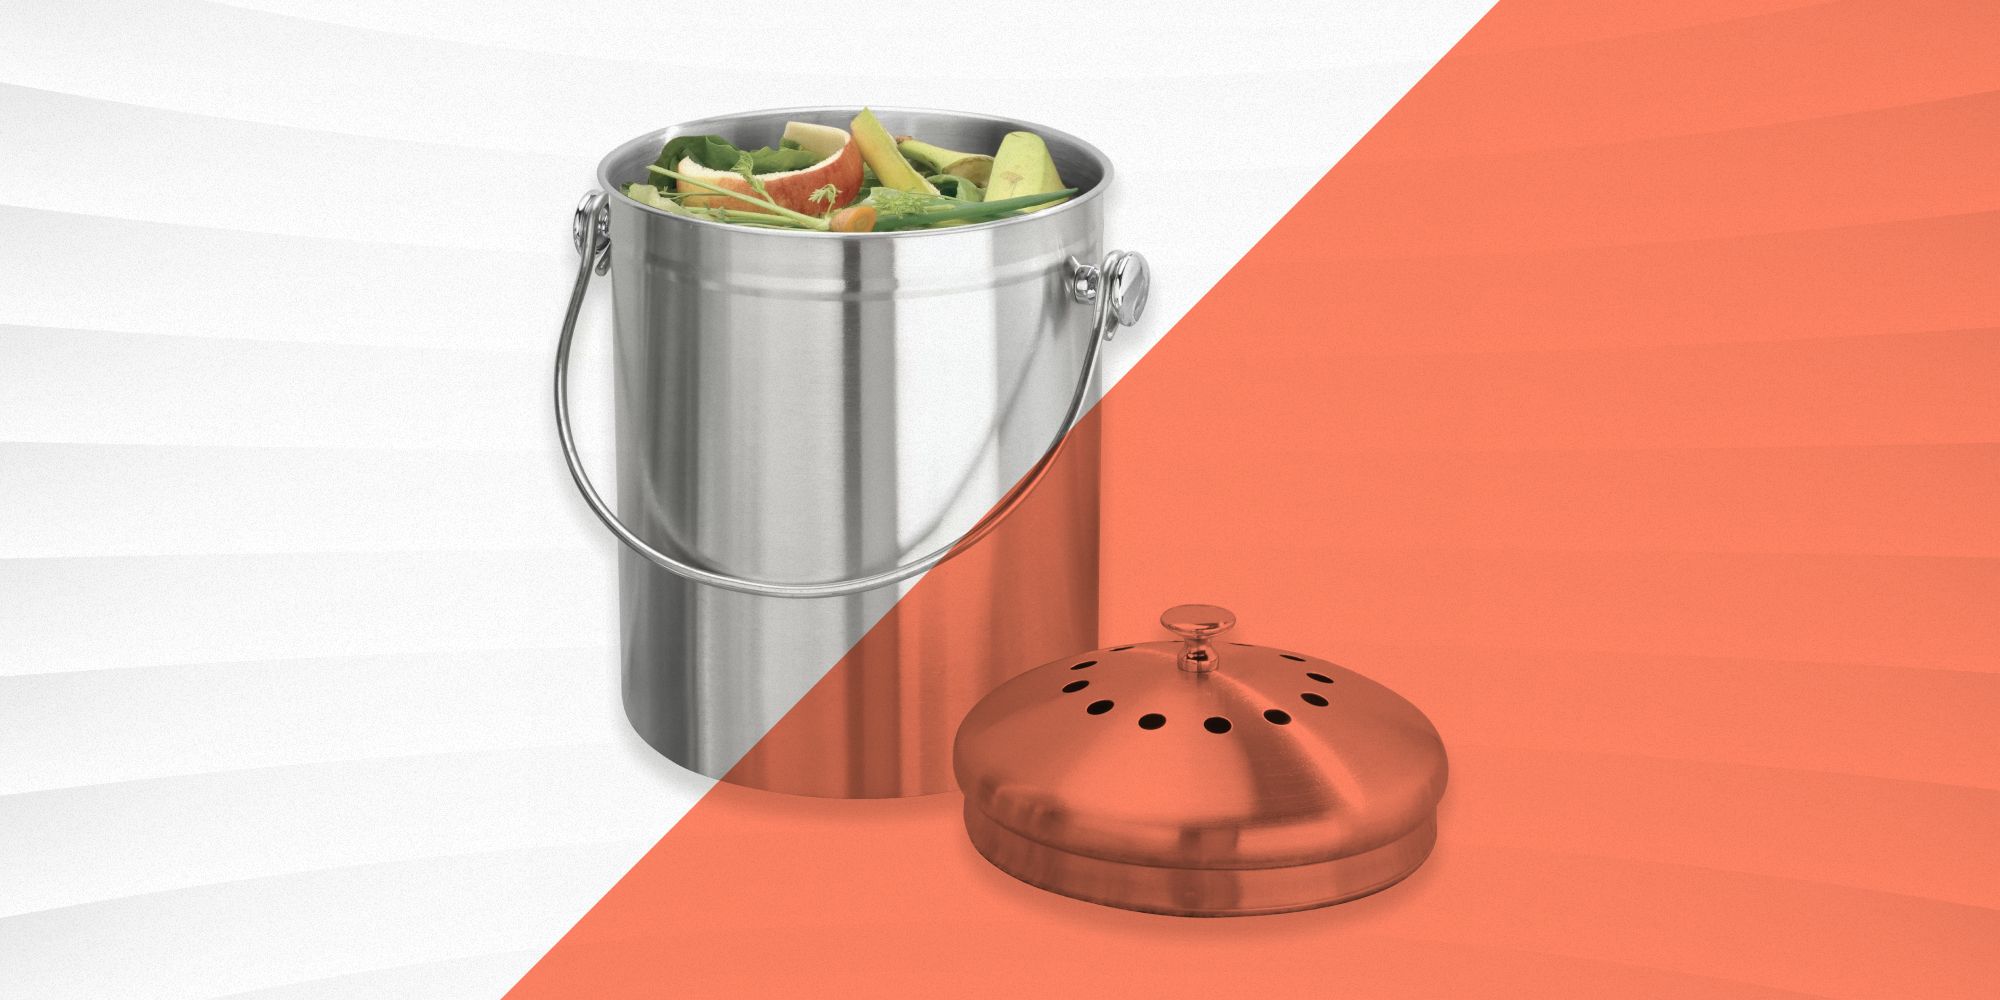 ENLOY Compost Bin Stainless Steel Indoor Compost Bucket for Kitchen Countertop 